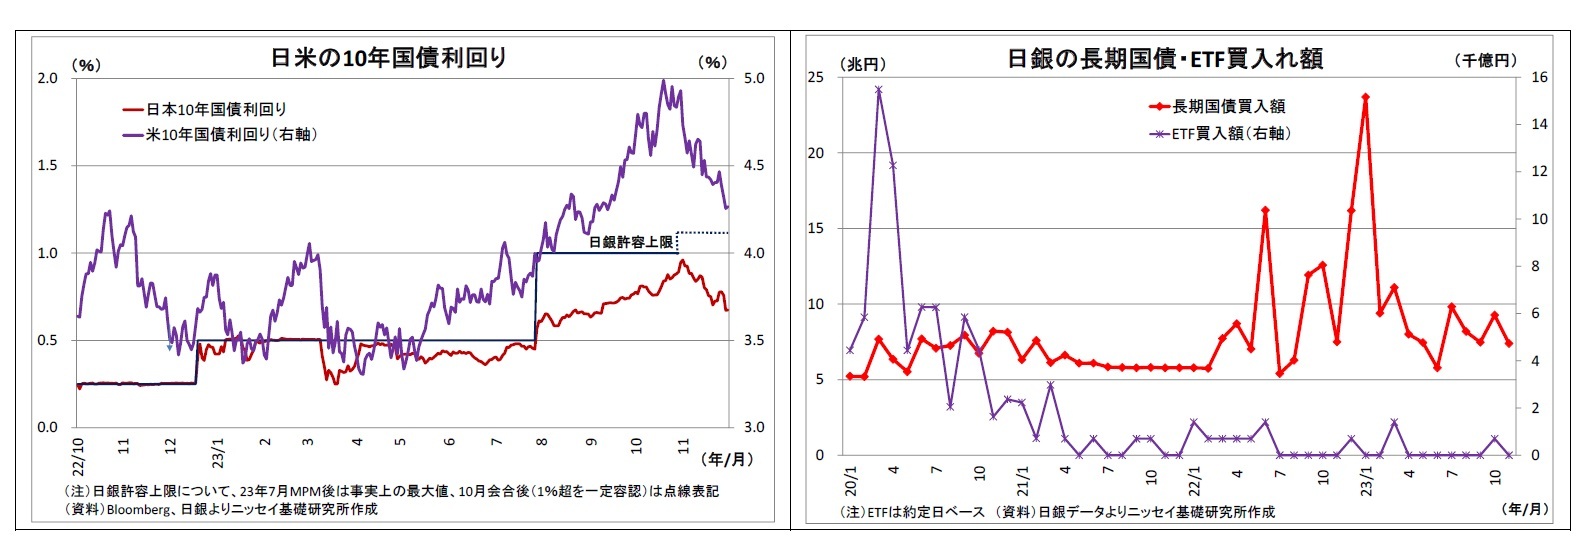 日米の10年国債利回り/日銀の長期国債・ETF買入れ額